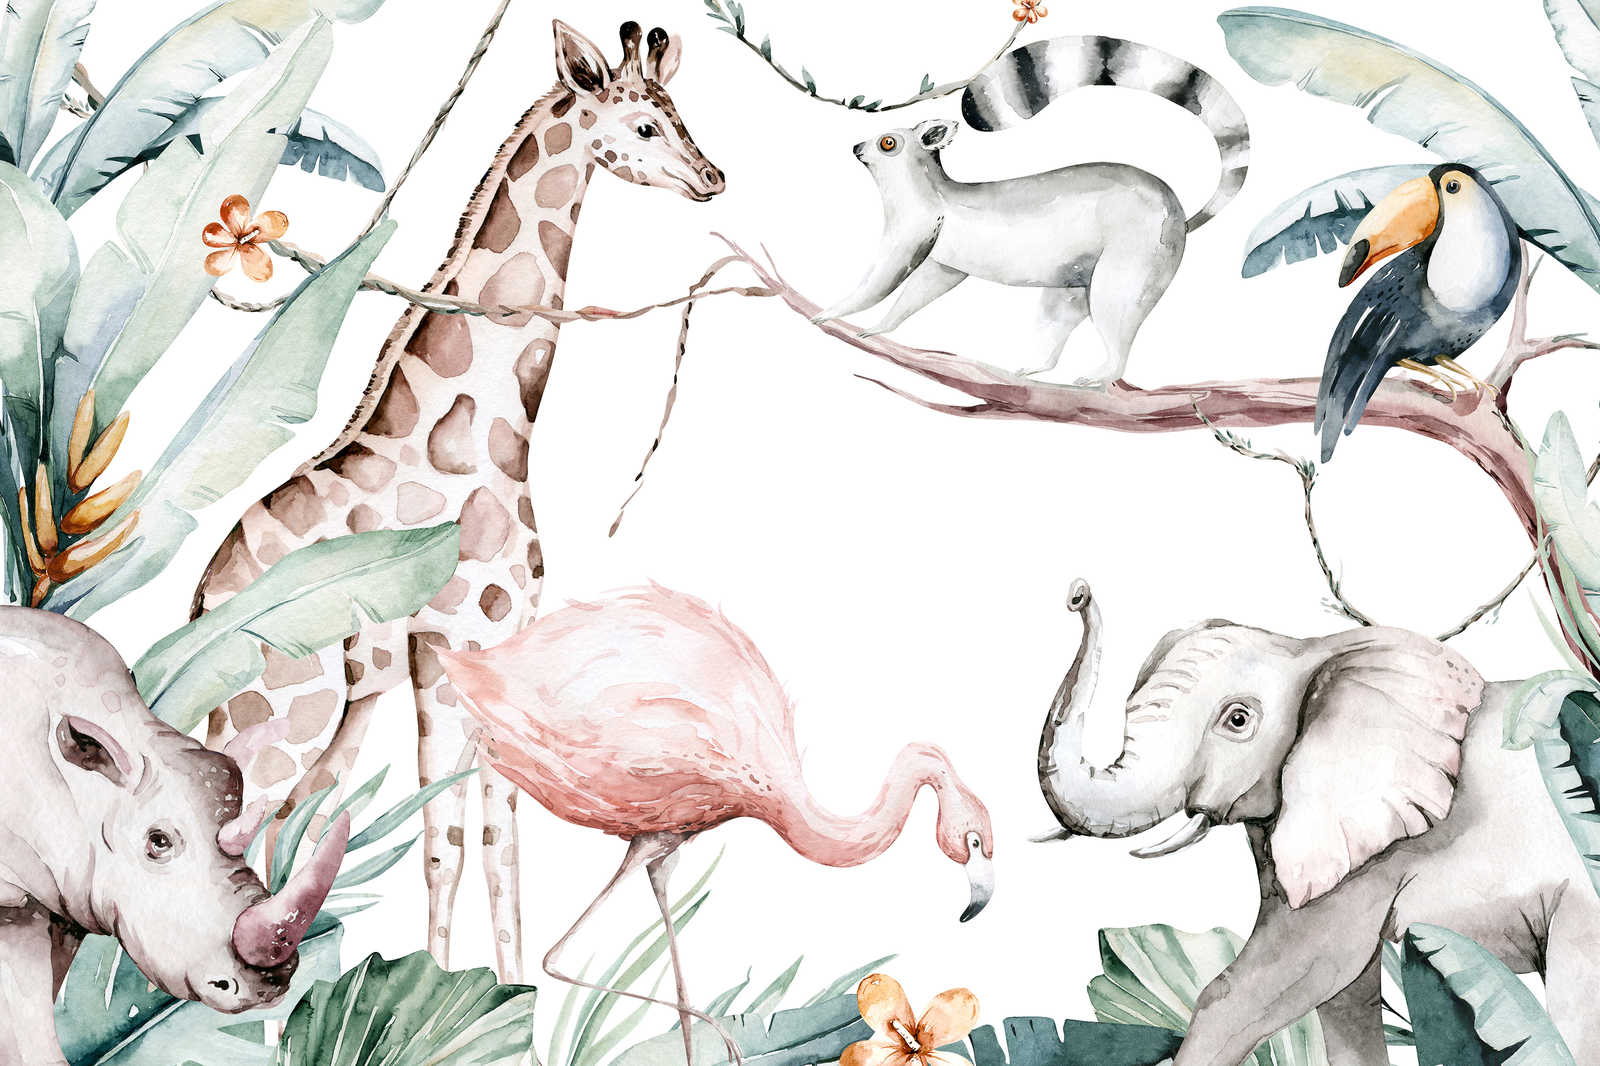             Cuadro en lienzo con animales de la selva para niños - 0,90 m x 0,60 m
        